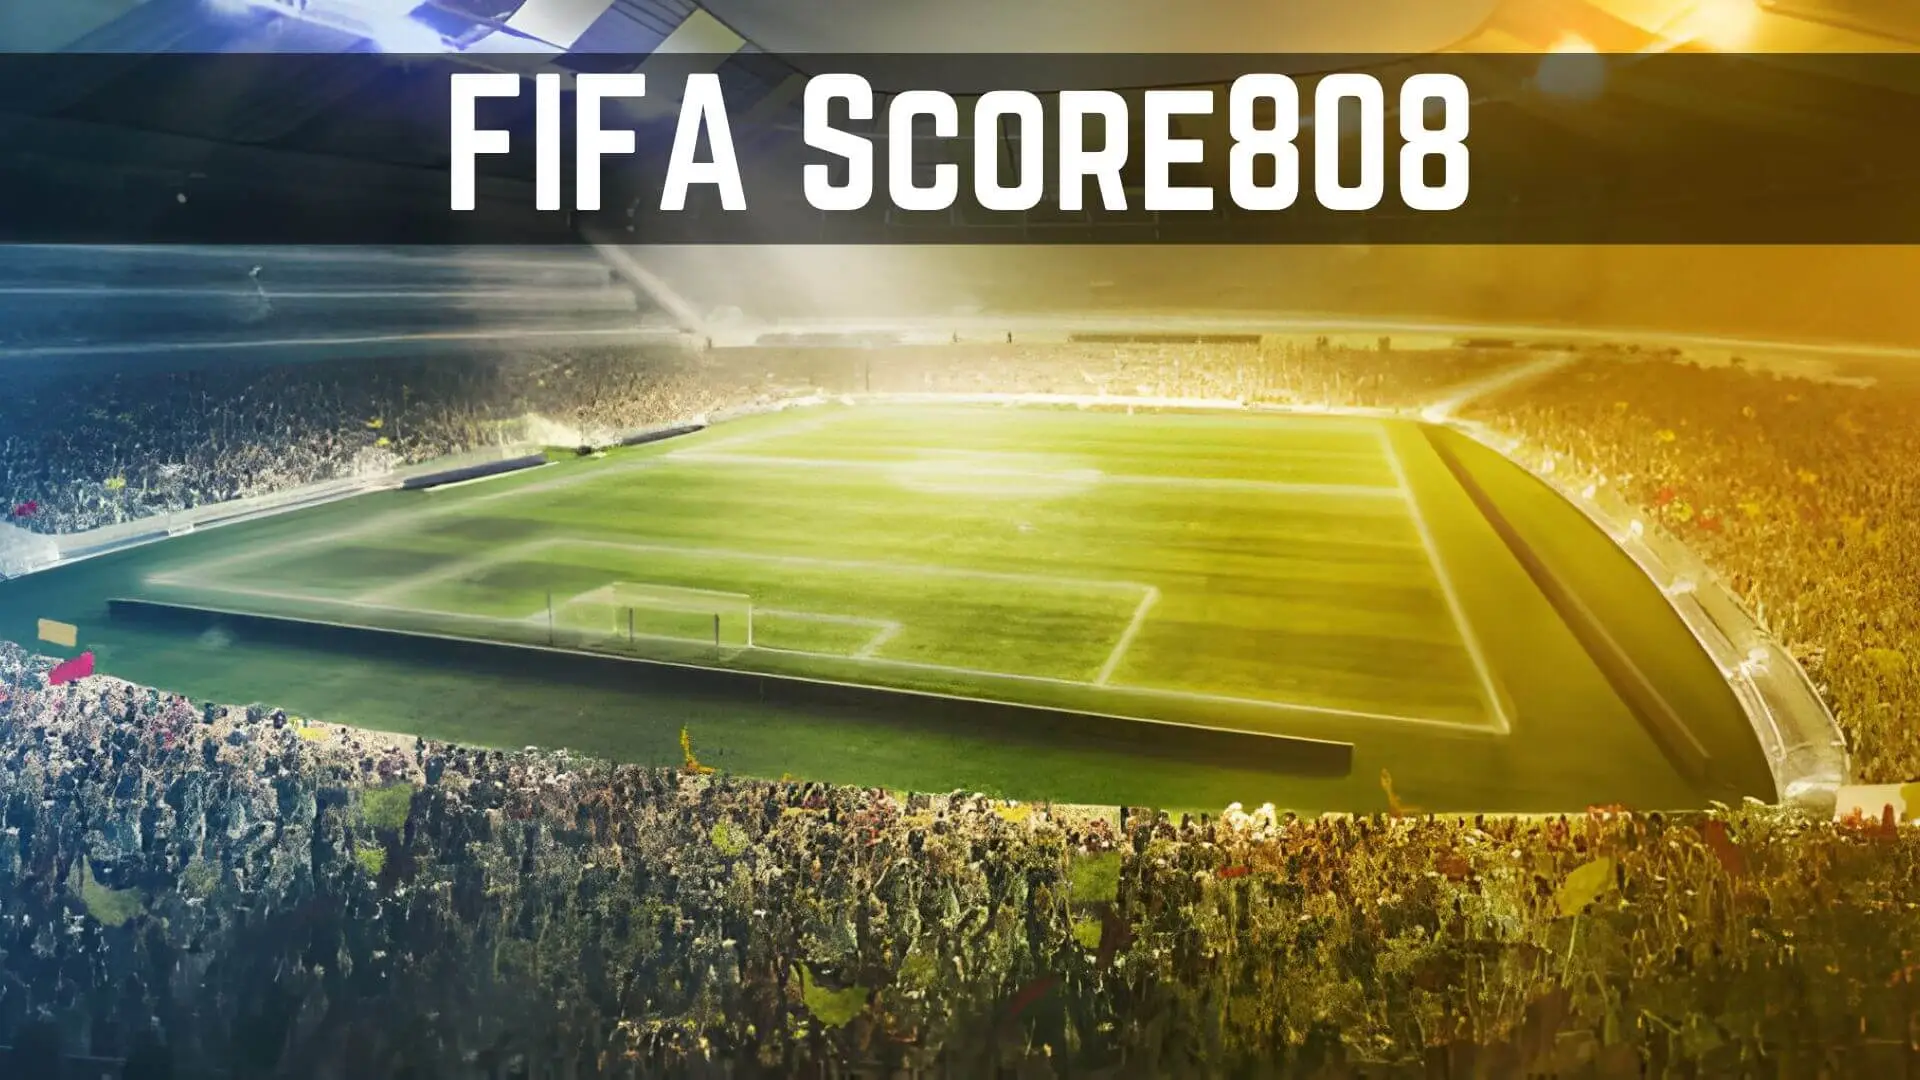 FIFAScore808.com